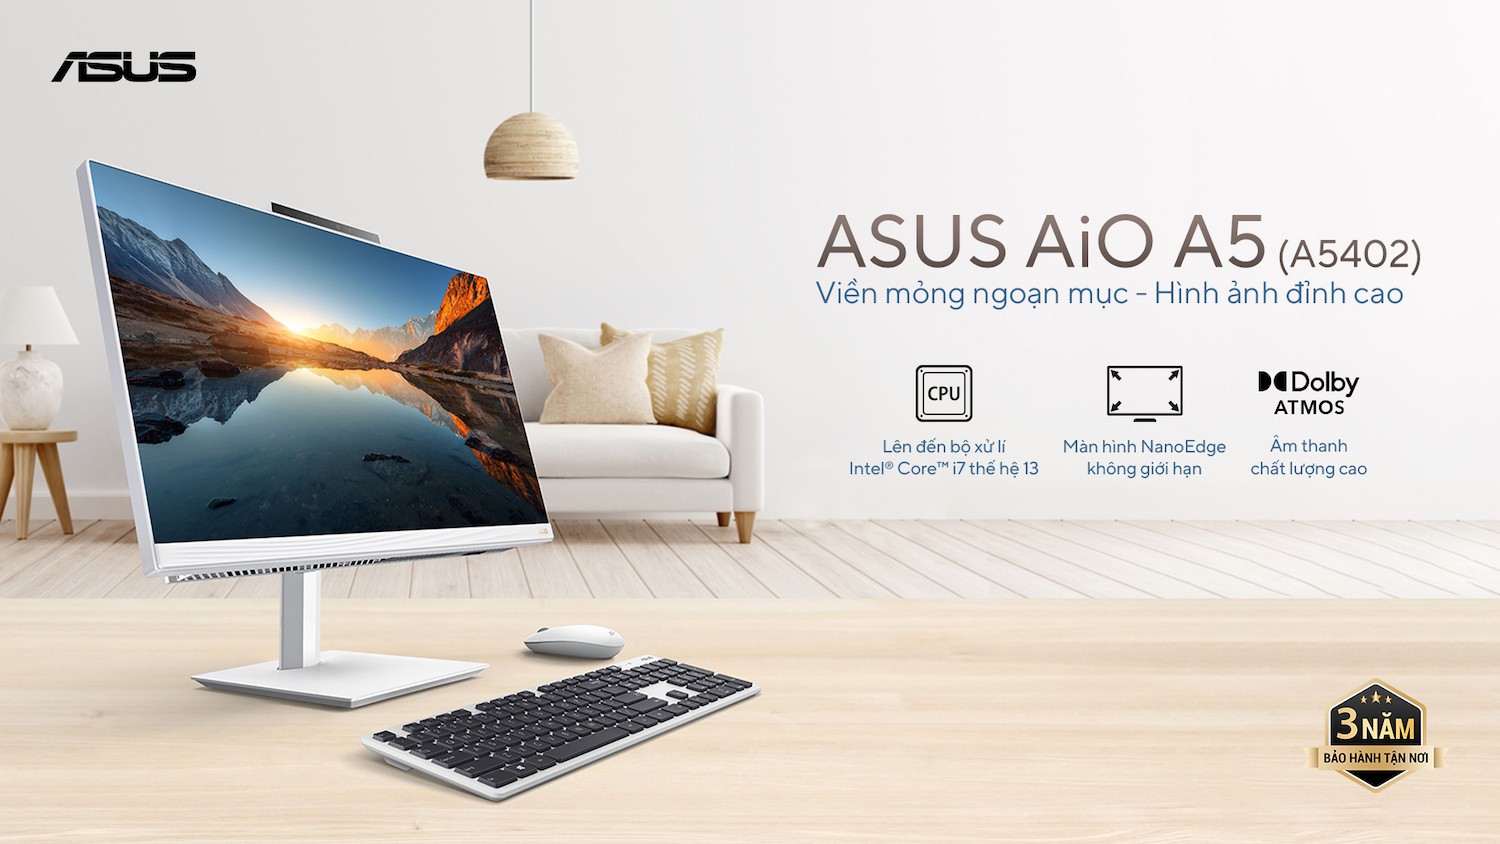 ASUS-AiO-A5-A5402.jpg